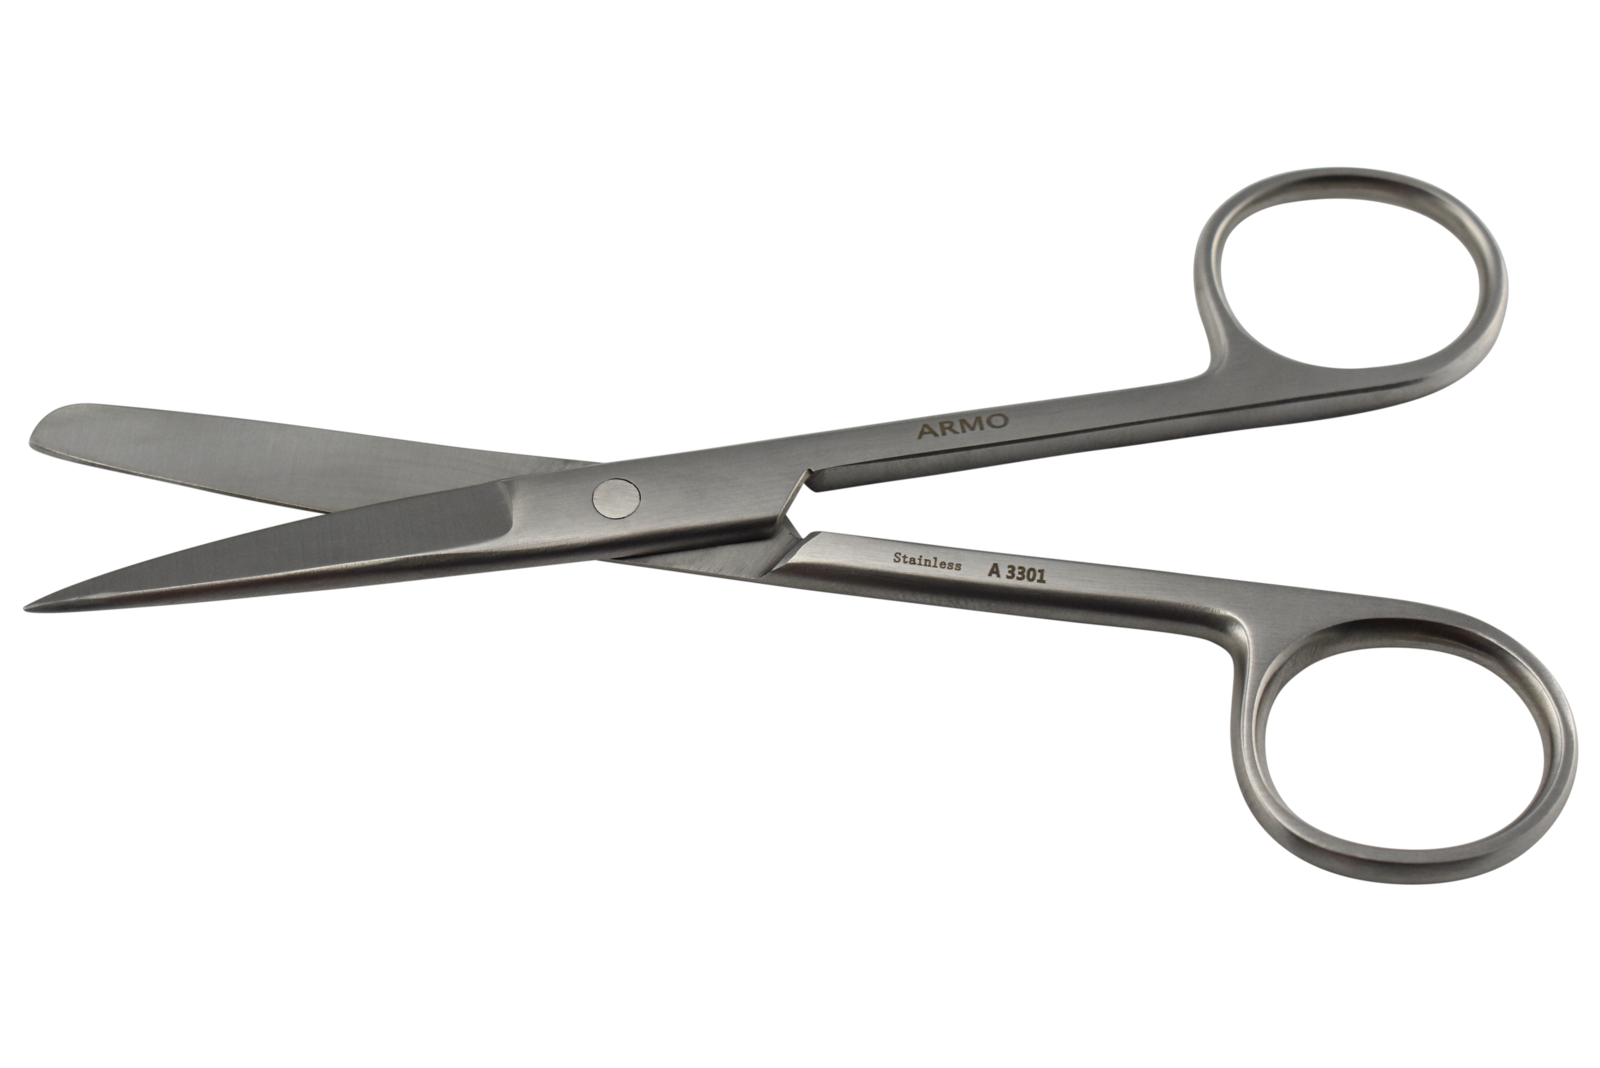 Felt Scissors Blunt/Sharp 13cm